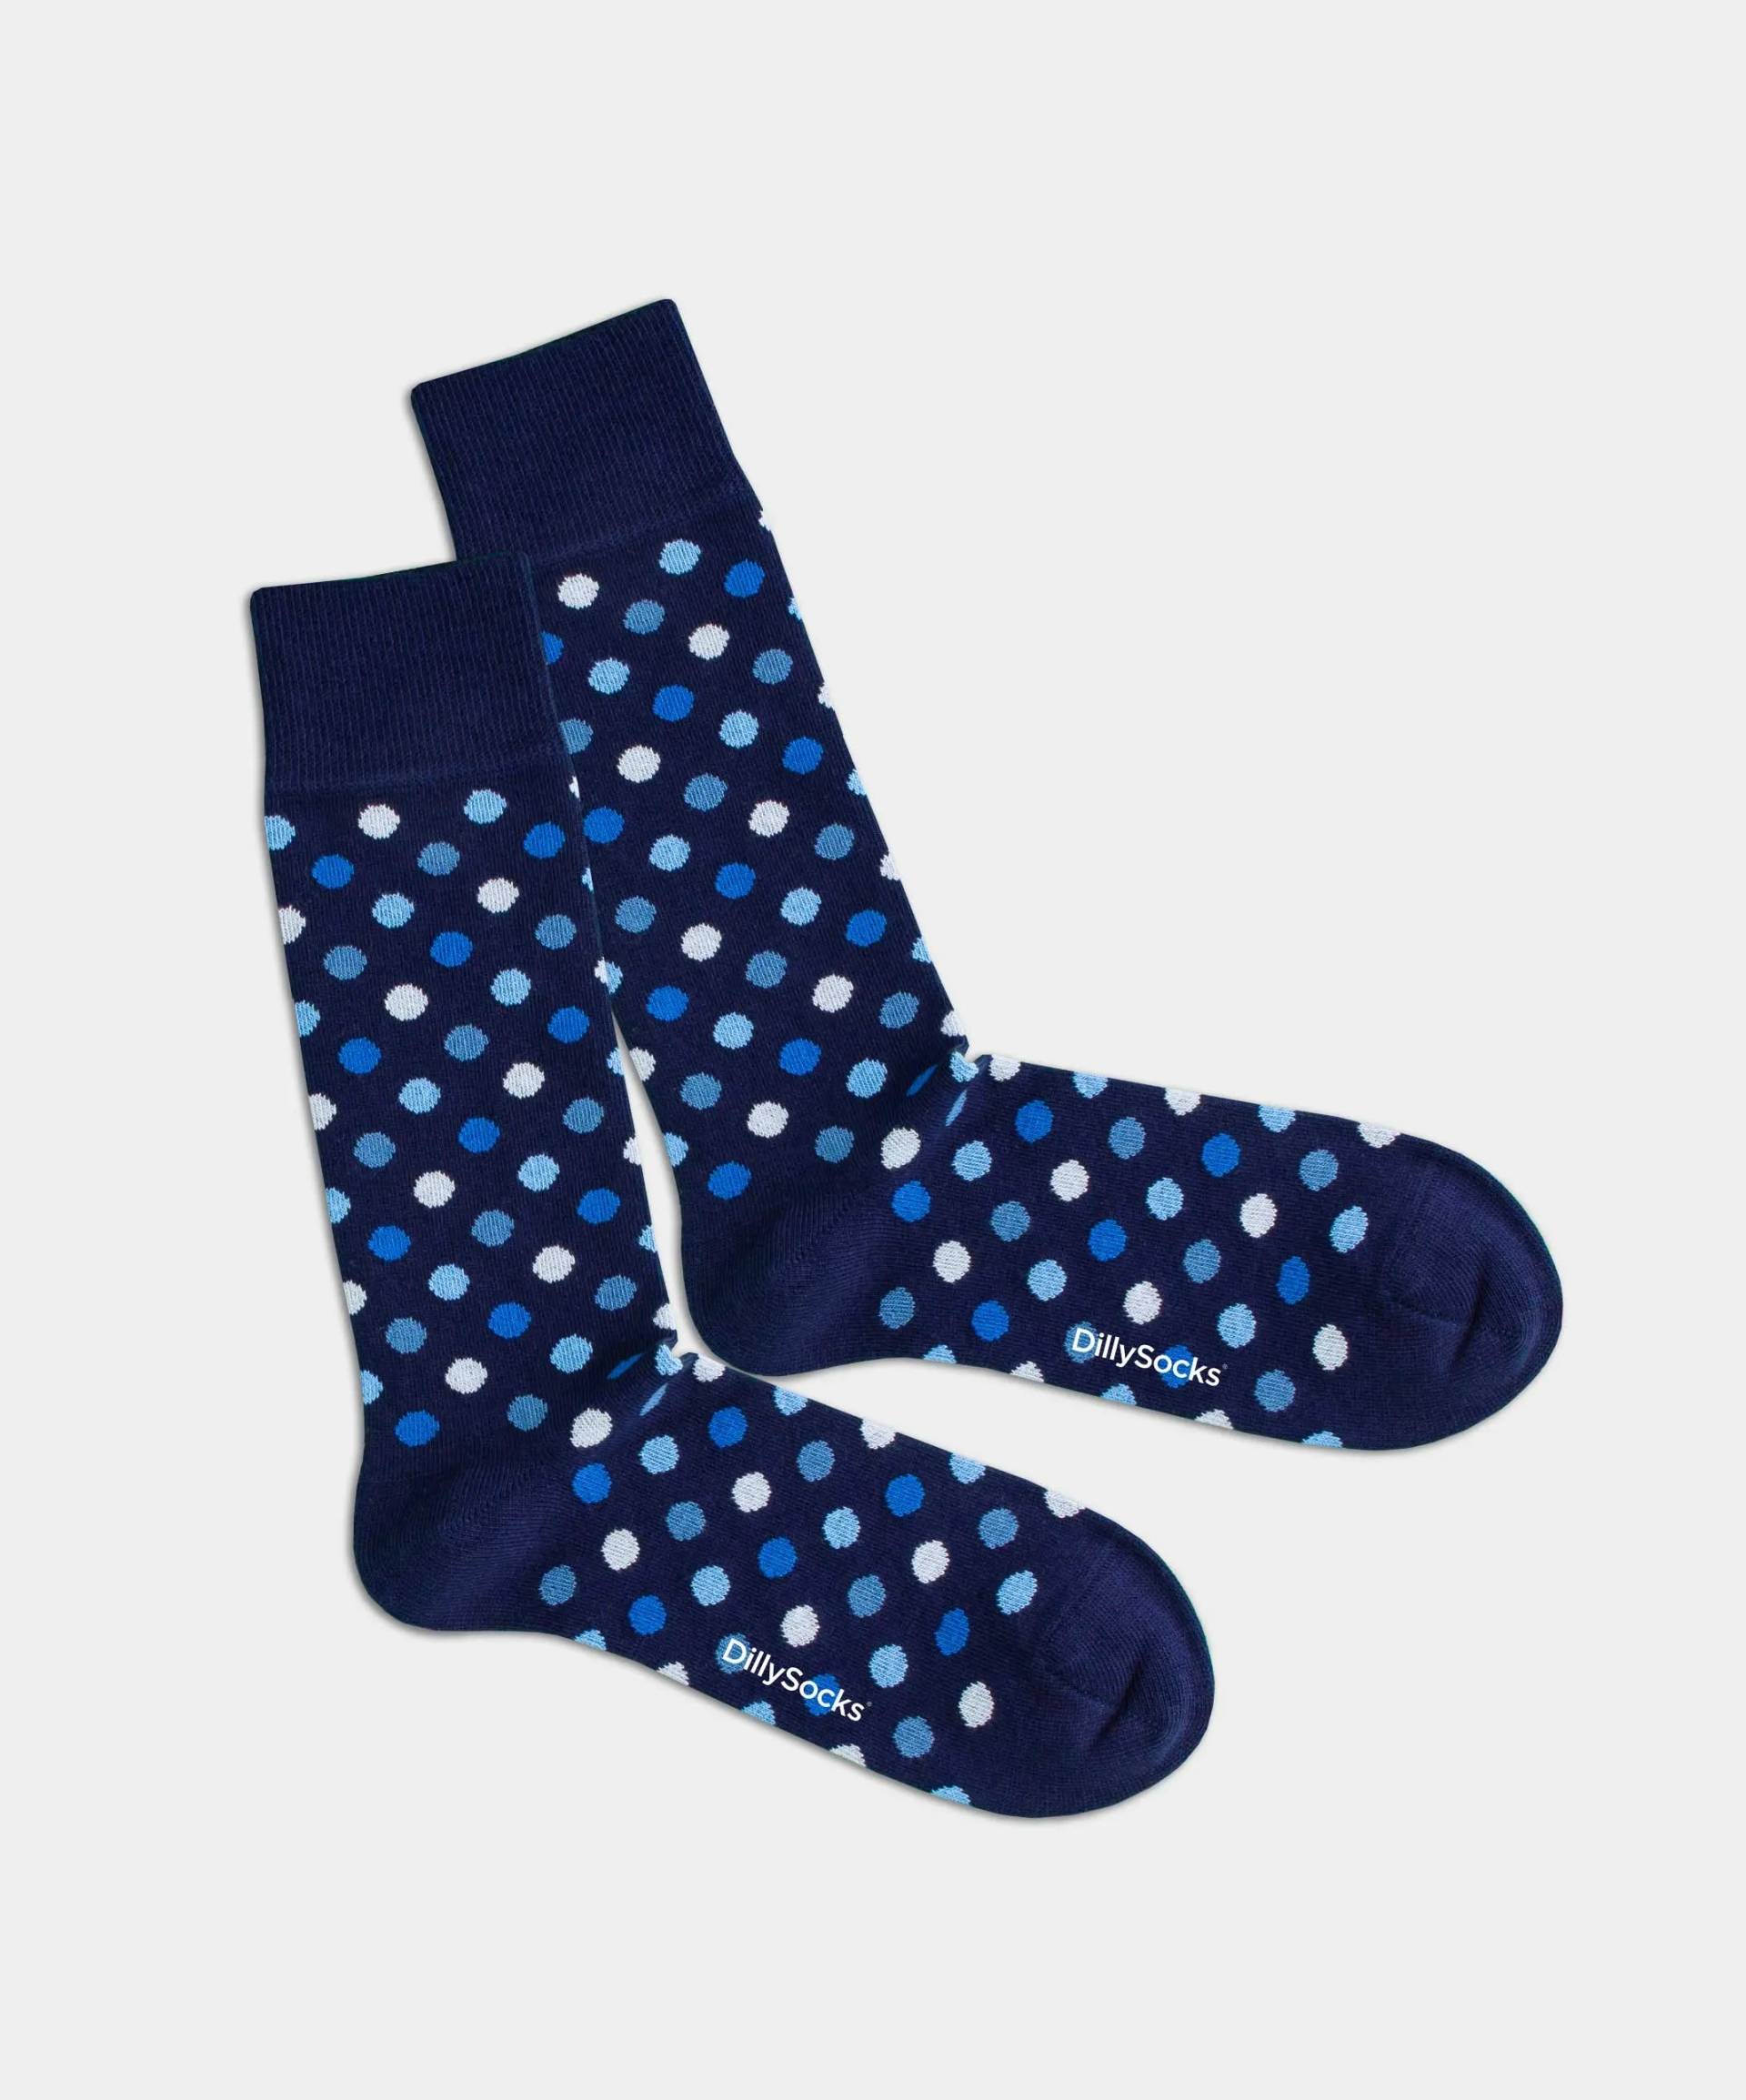 - Socken in Blau mit Konfetti Punkte Motiv/Muster von DillySocks